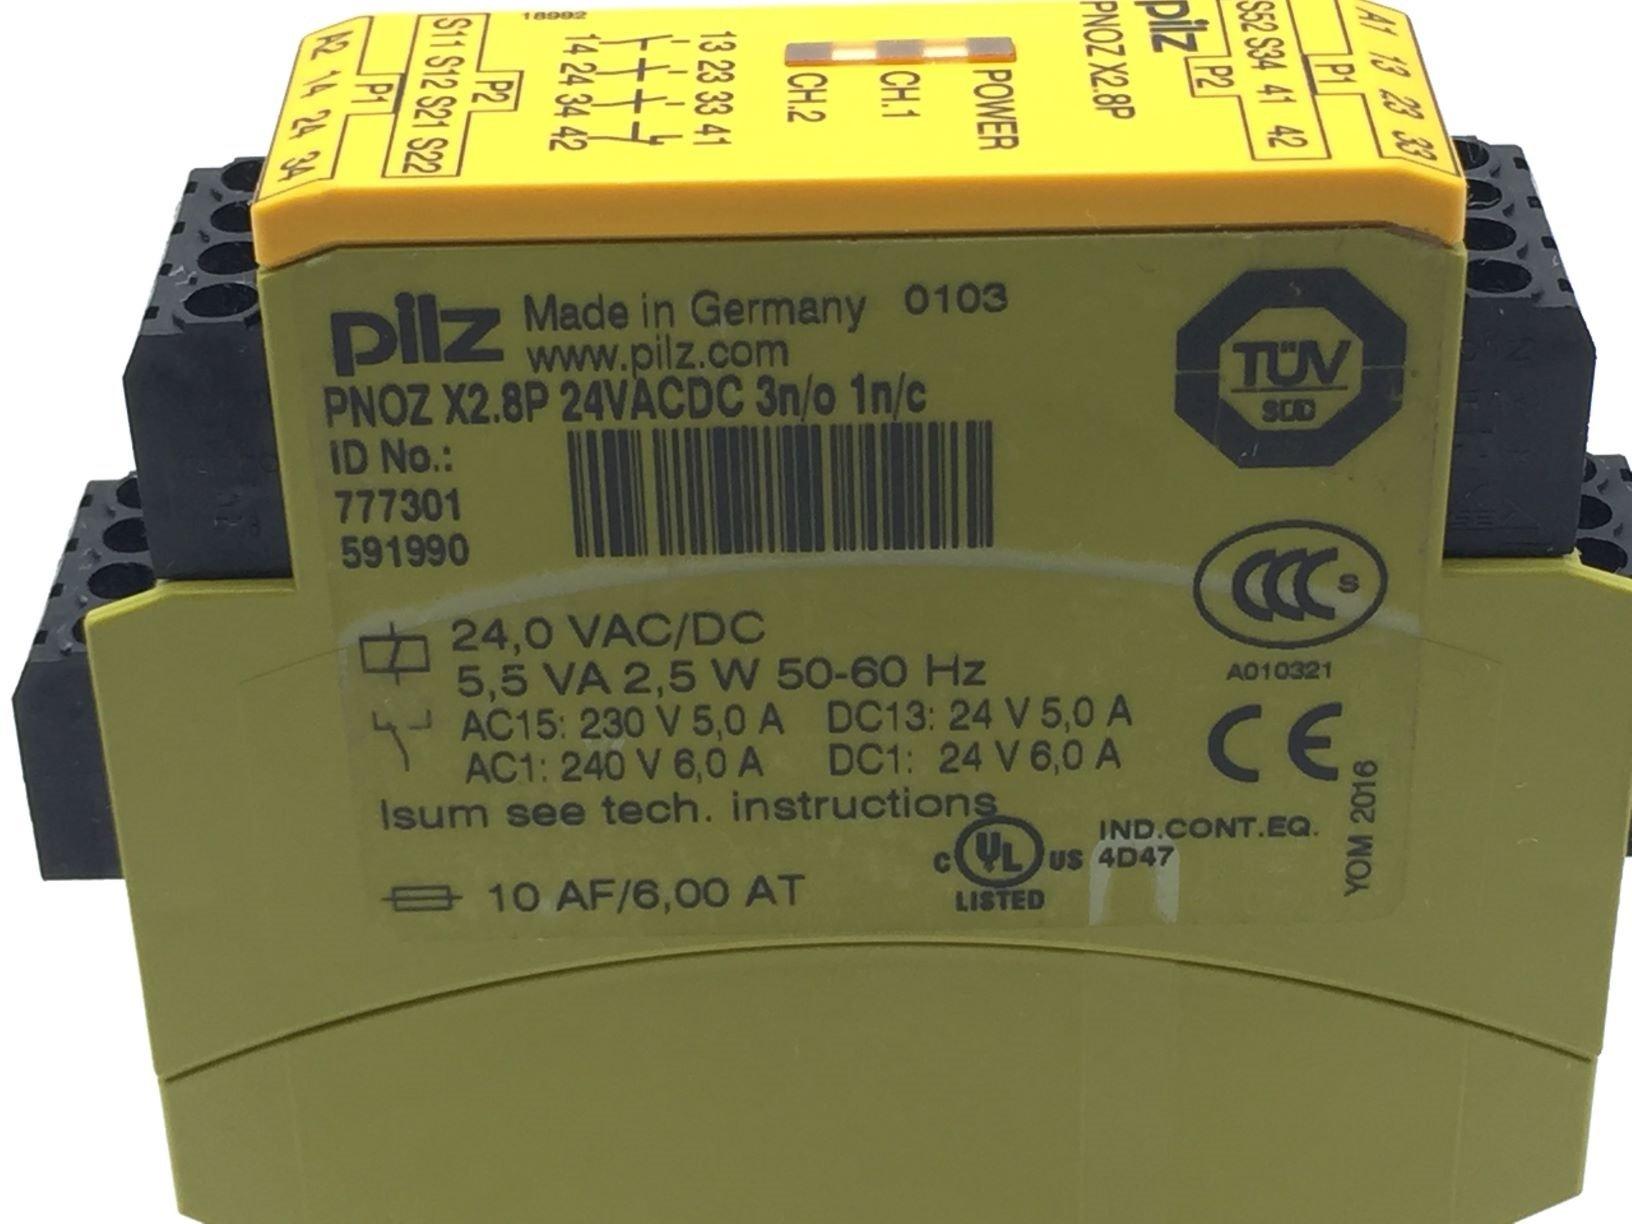 Pilz 777301 PNOZ X2.8P Safety Relay 24VDC/AC 